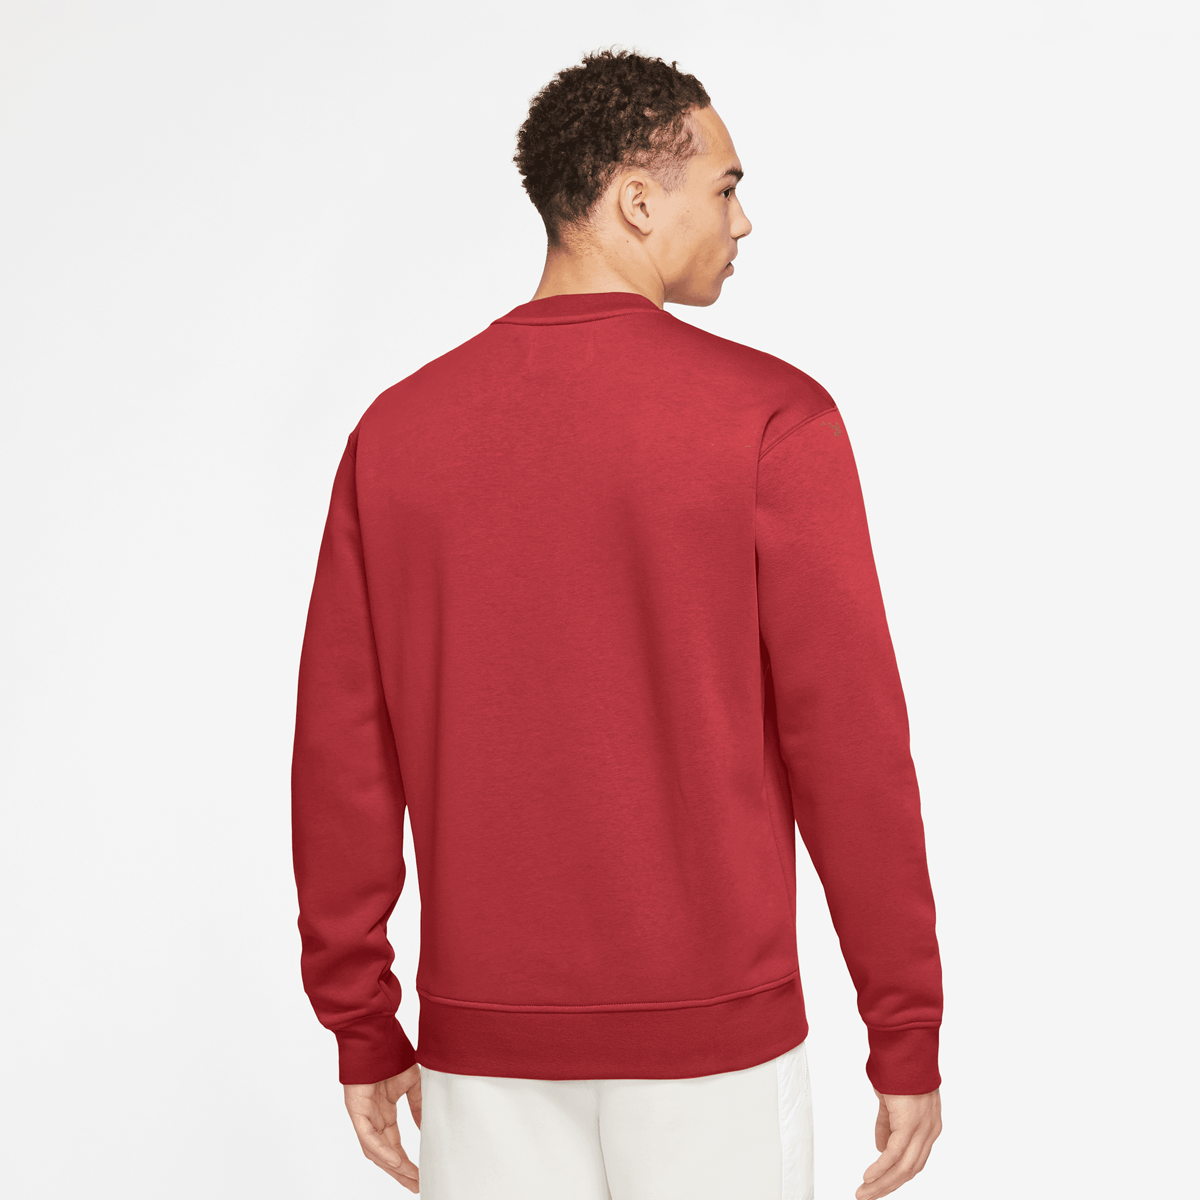 Jordan Essentials Fleece Crew Sweatshirt Sweatshirts Heren gym red white maat: M beschikbare maaten:S M L XL XXL